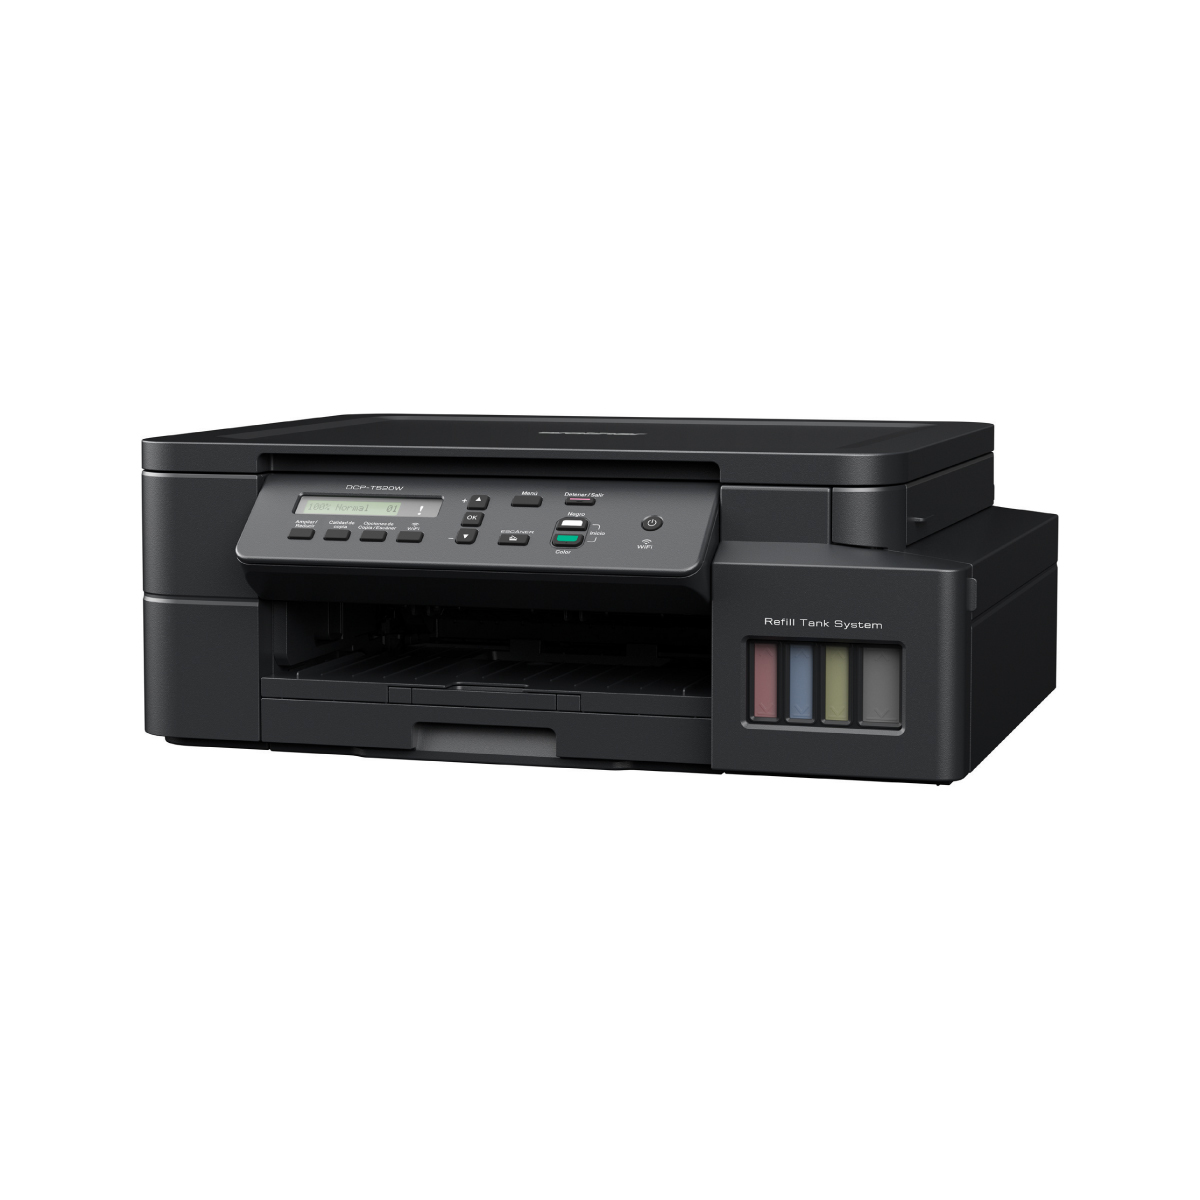 Impresora Multifuncional Brother DCP-T520W de Inyección de tinta a color con WiFi (Reacondicionado A, Empaque Dañado)